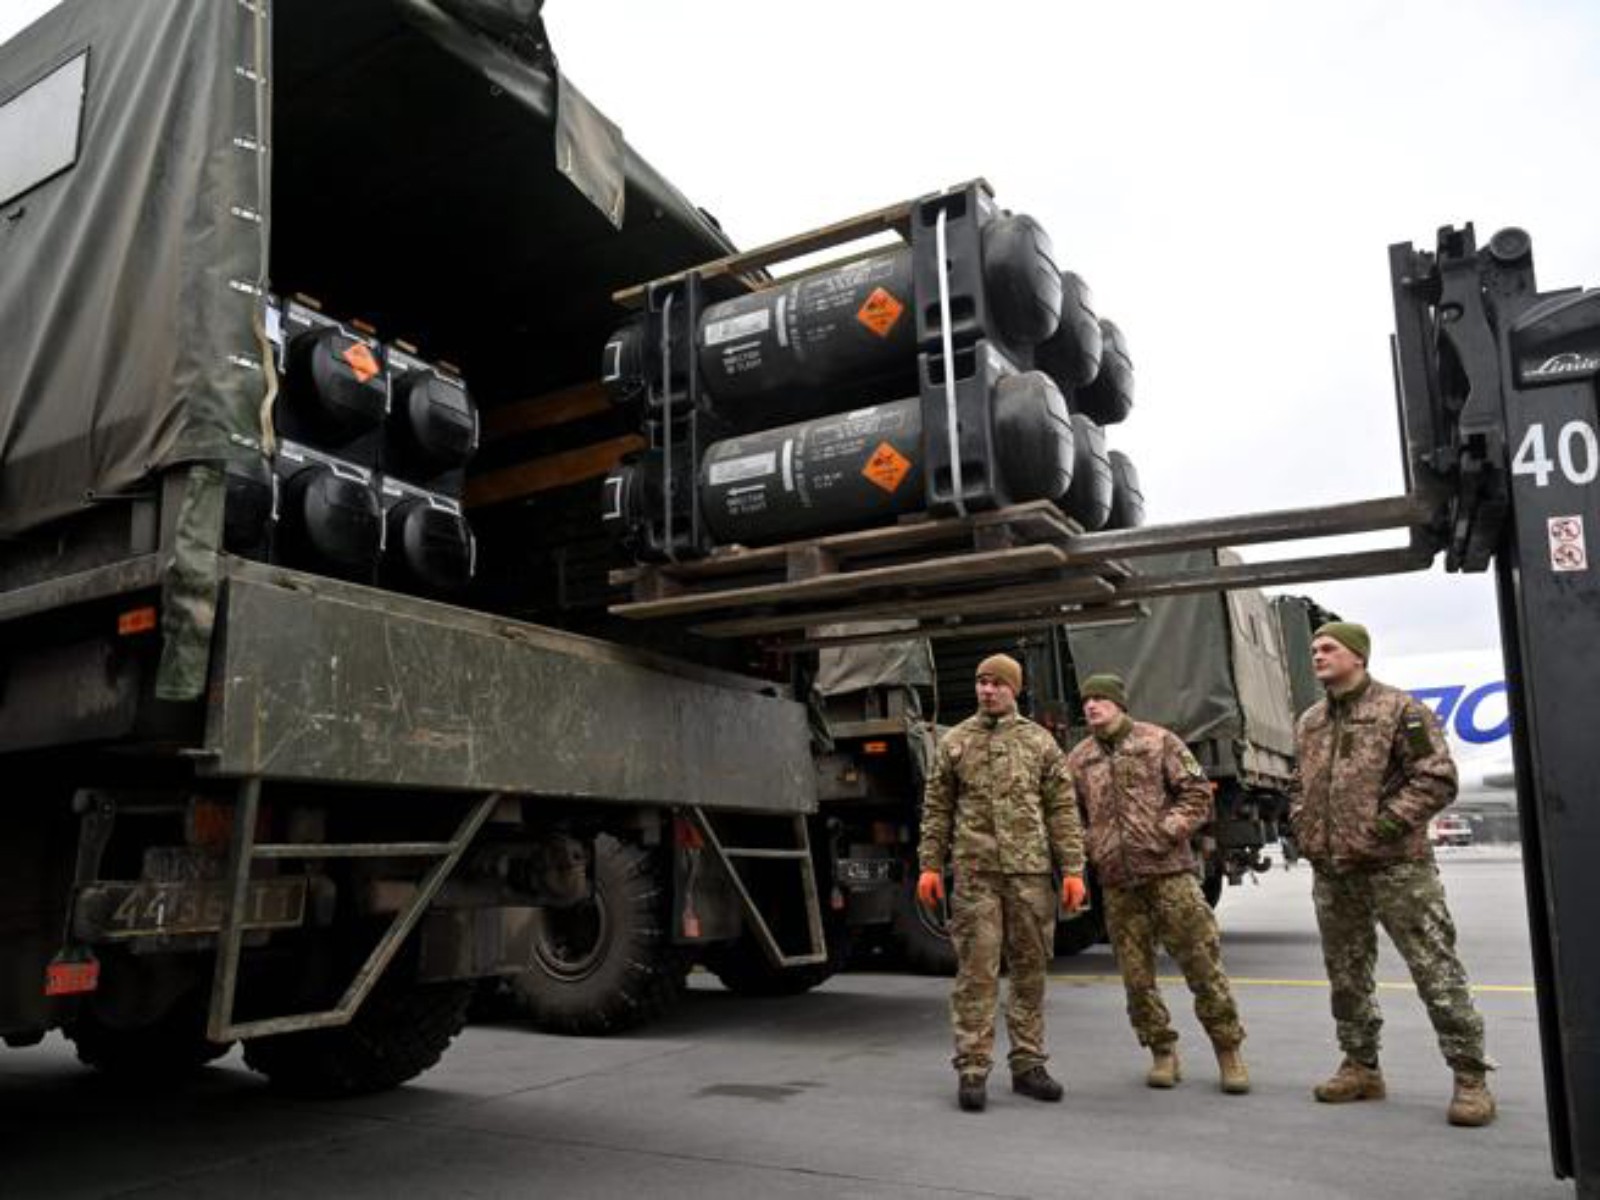 19 Maggio 2022 – Usa inviano altri 40miliardi di euro in armi a Kiev. Afghanistan, obbligo di velo per presentatrici e donne dello schermo. Canada mette al bando la Cina dal 5G. Germania, ok taglio carburanti